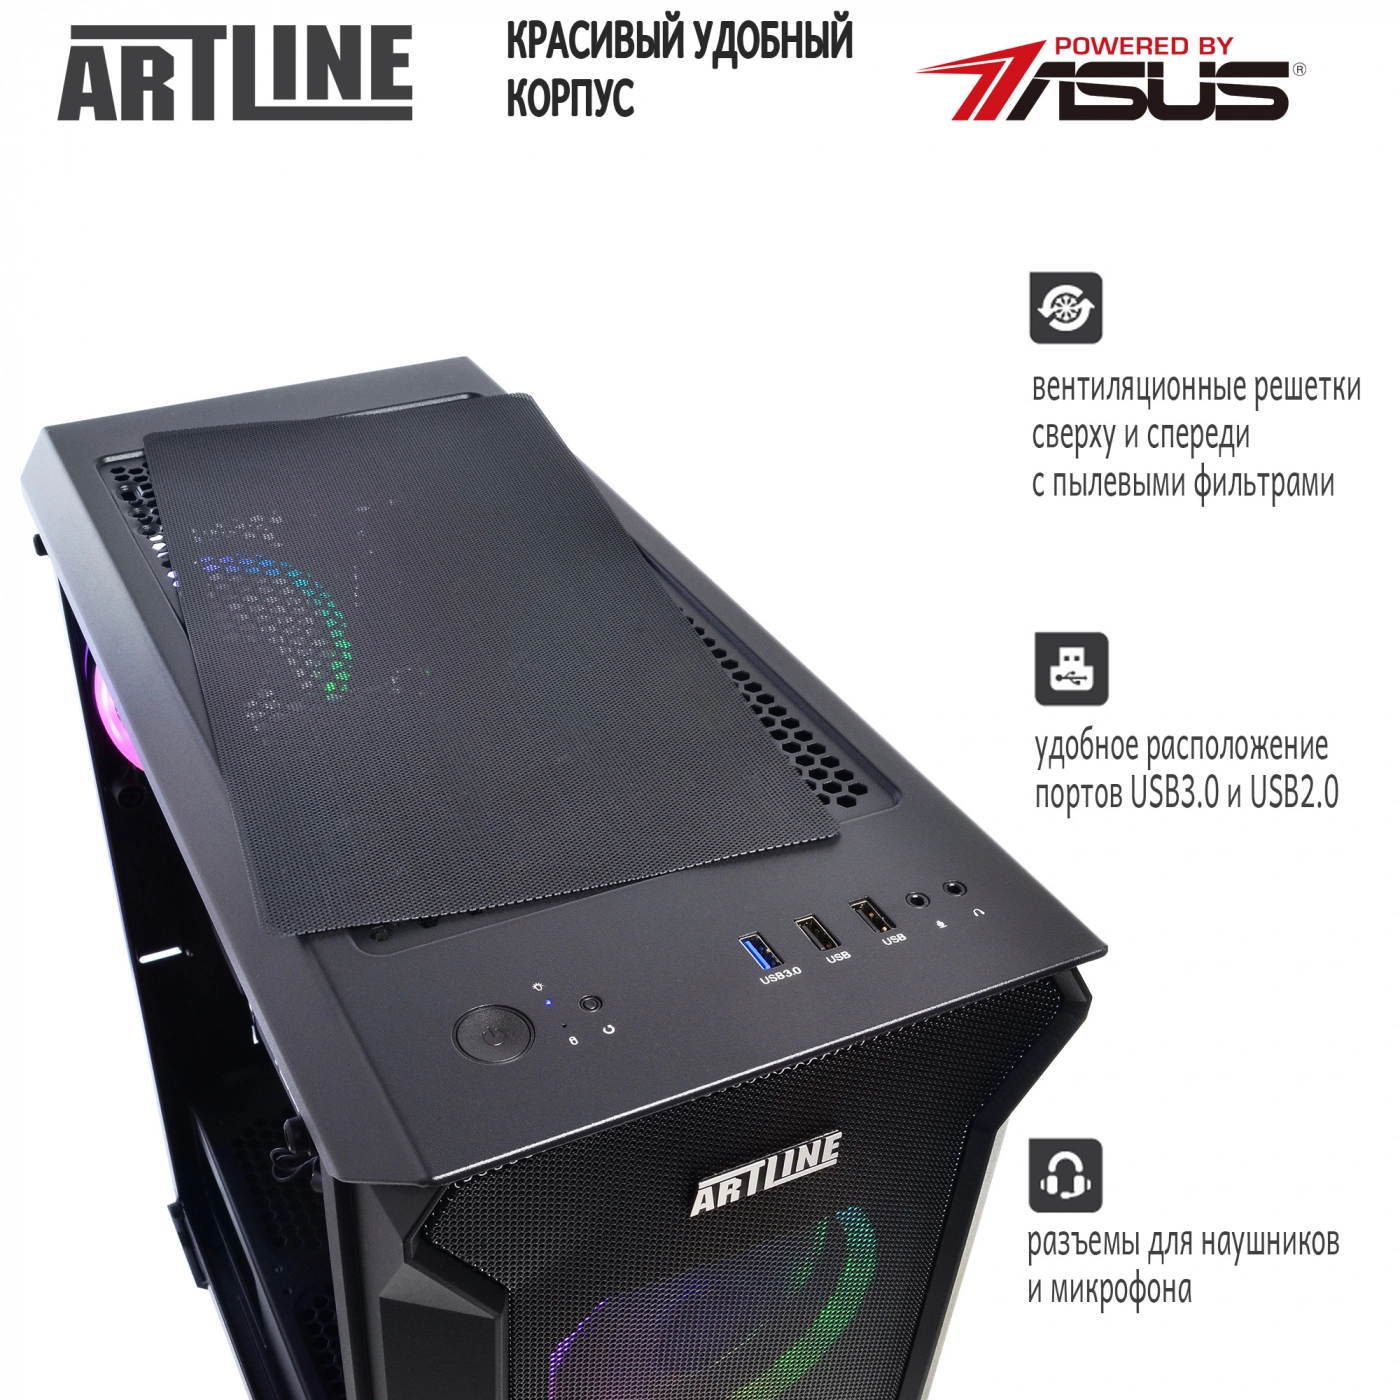 Купить Компьютер ARTLINE Gaming X75v12 - фото 5